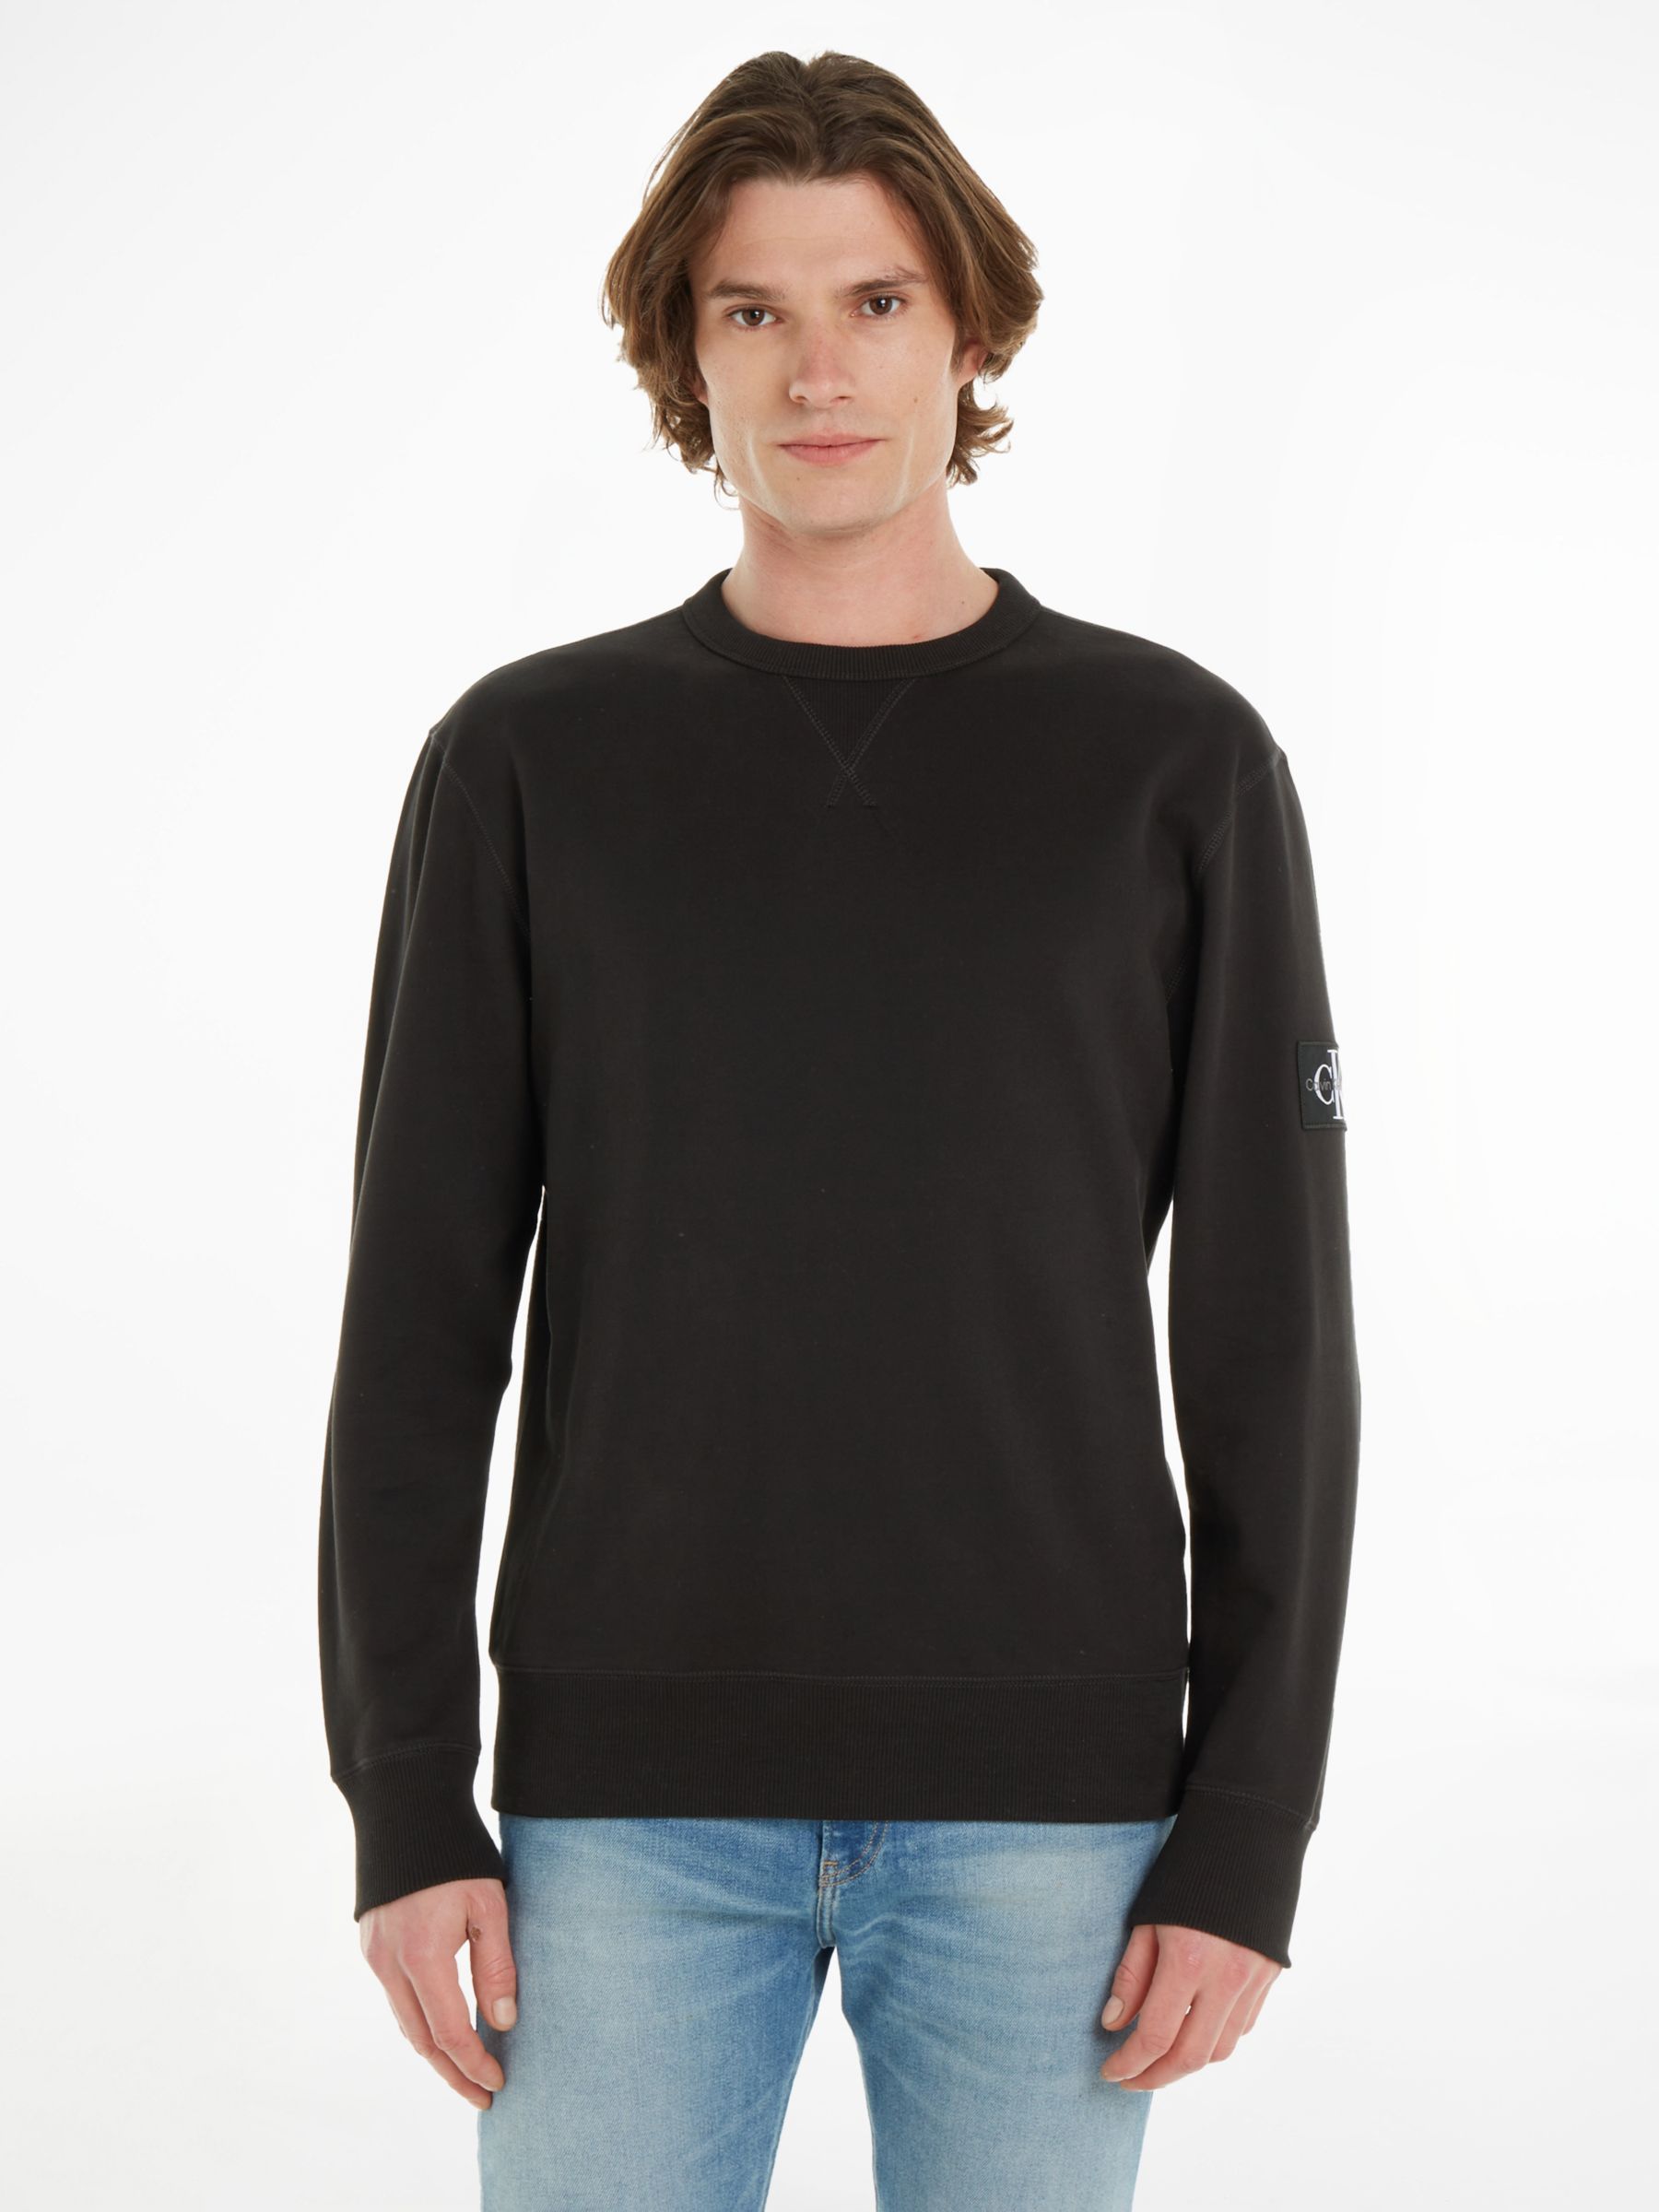 Calvin Klein Monologo Sweatshirt, Black at John Lewis & Partners